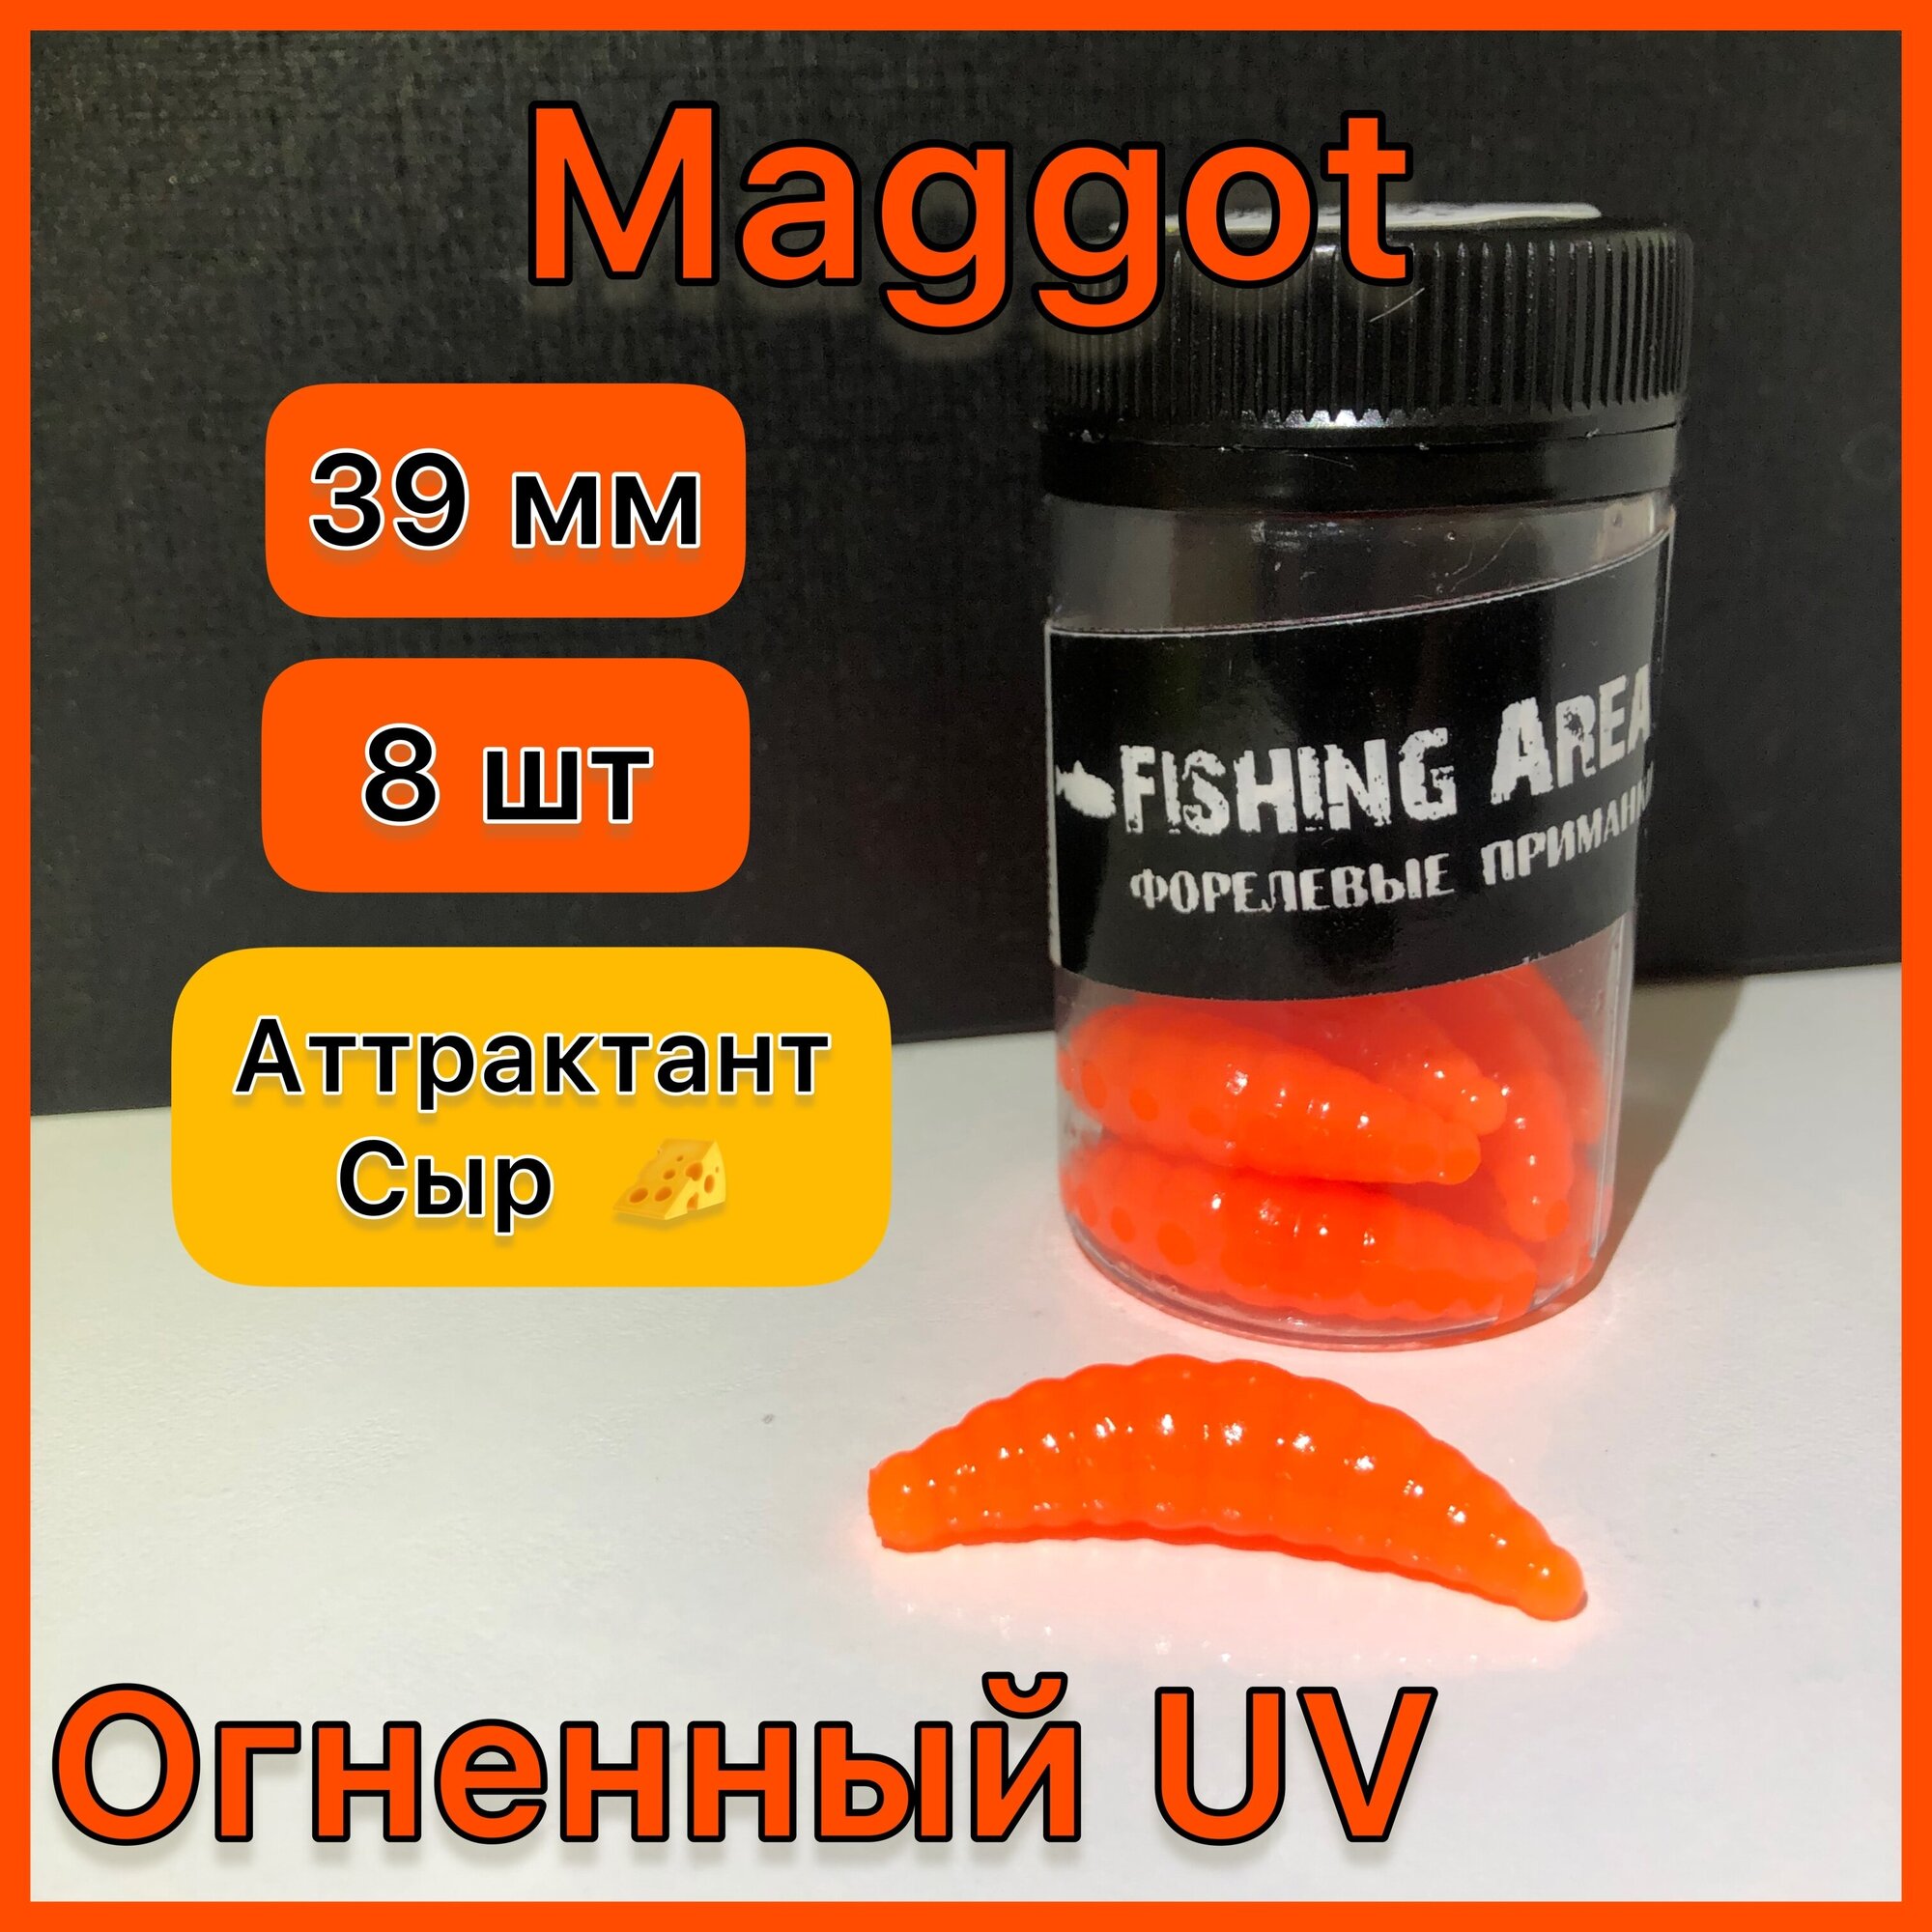 Форелевая приманка Магот/Maggot (личинка ) 39 мм 2 гр цвет " огненный UV " аттрактант СЫР